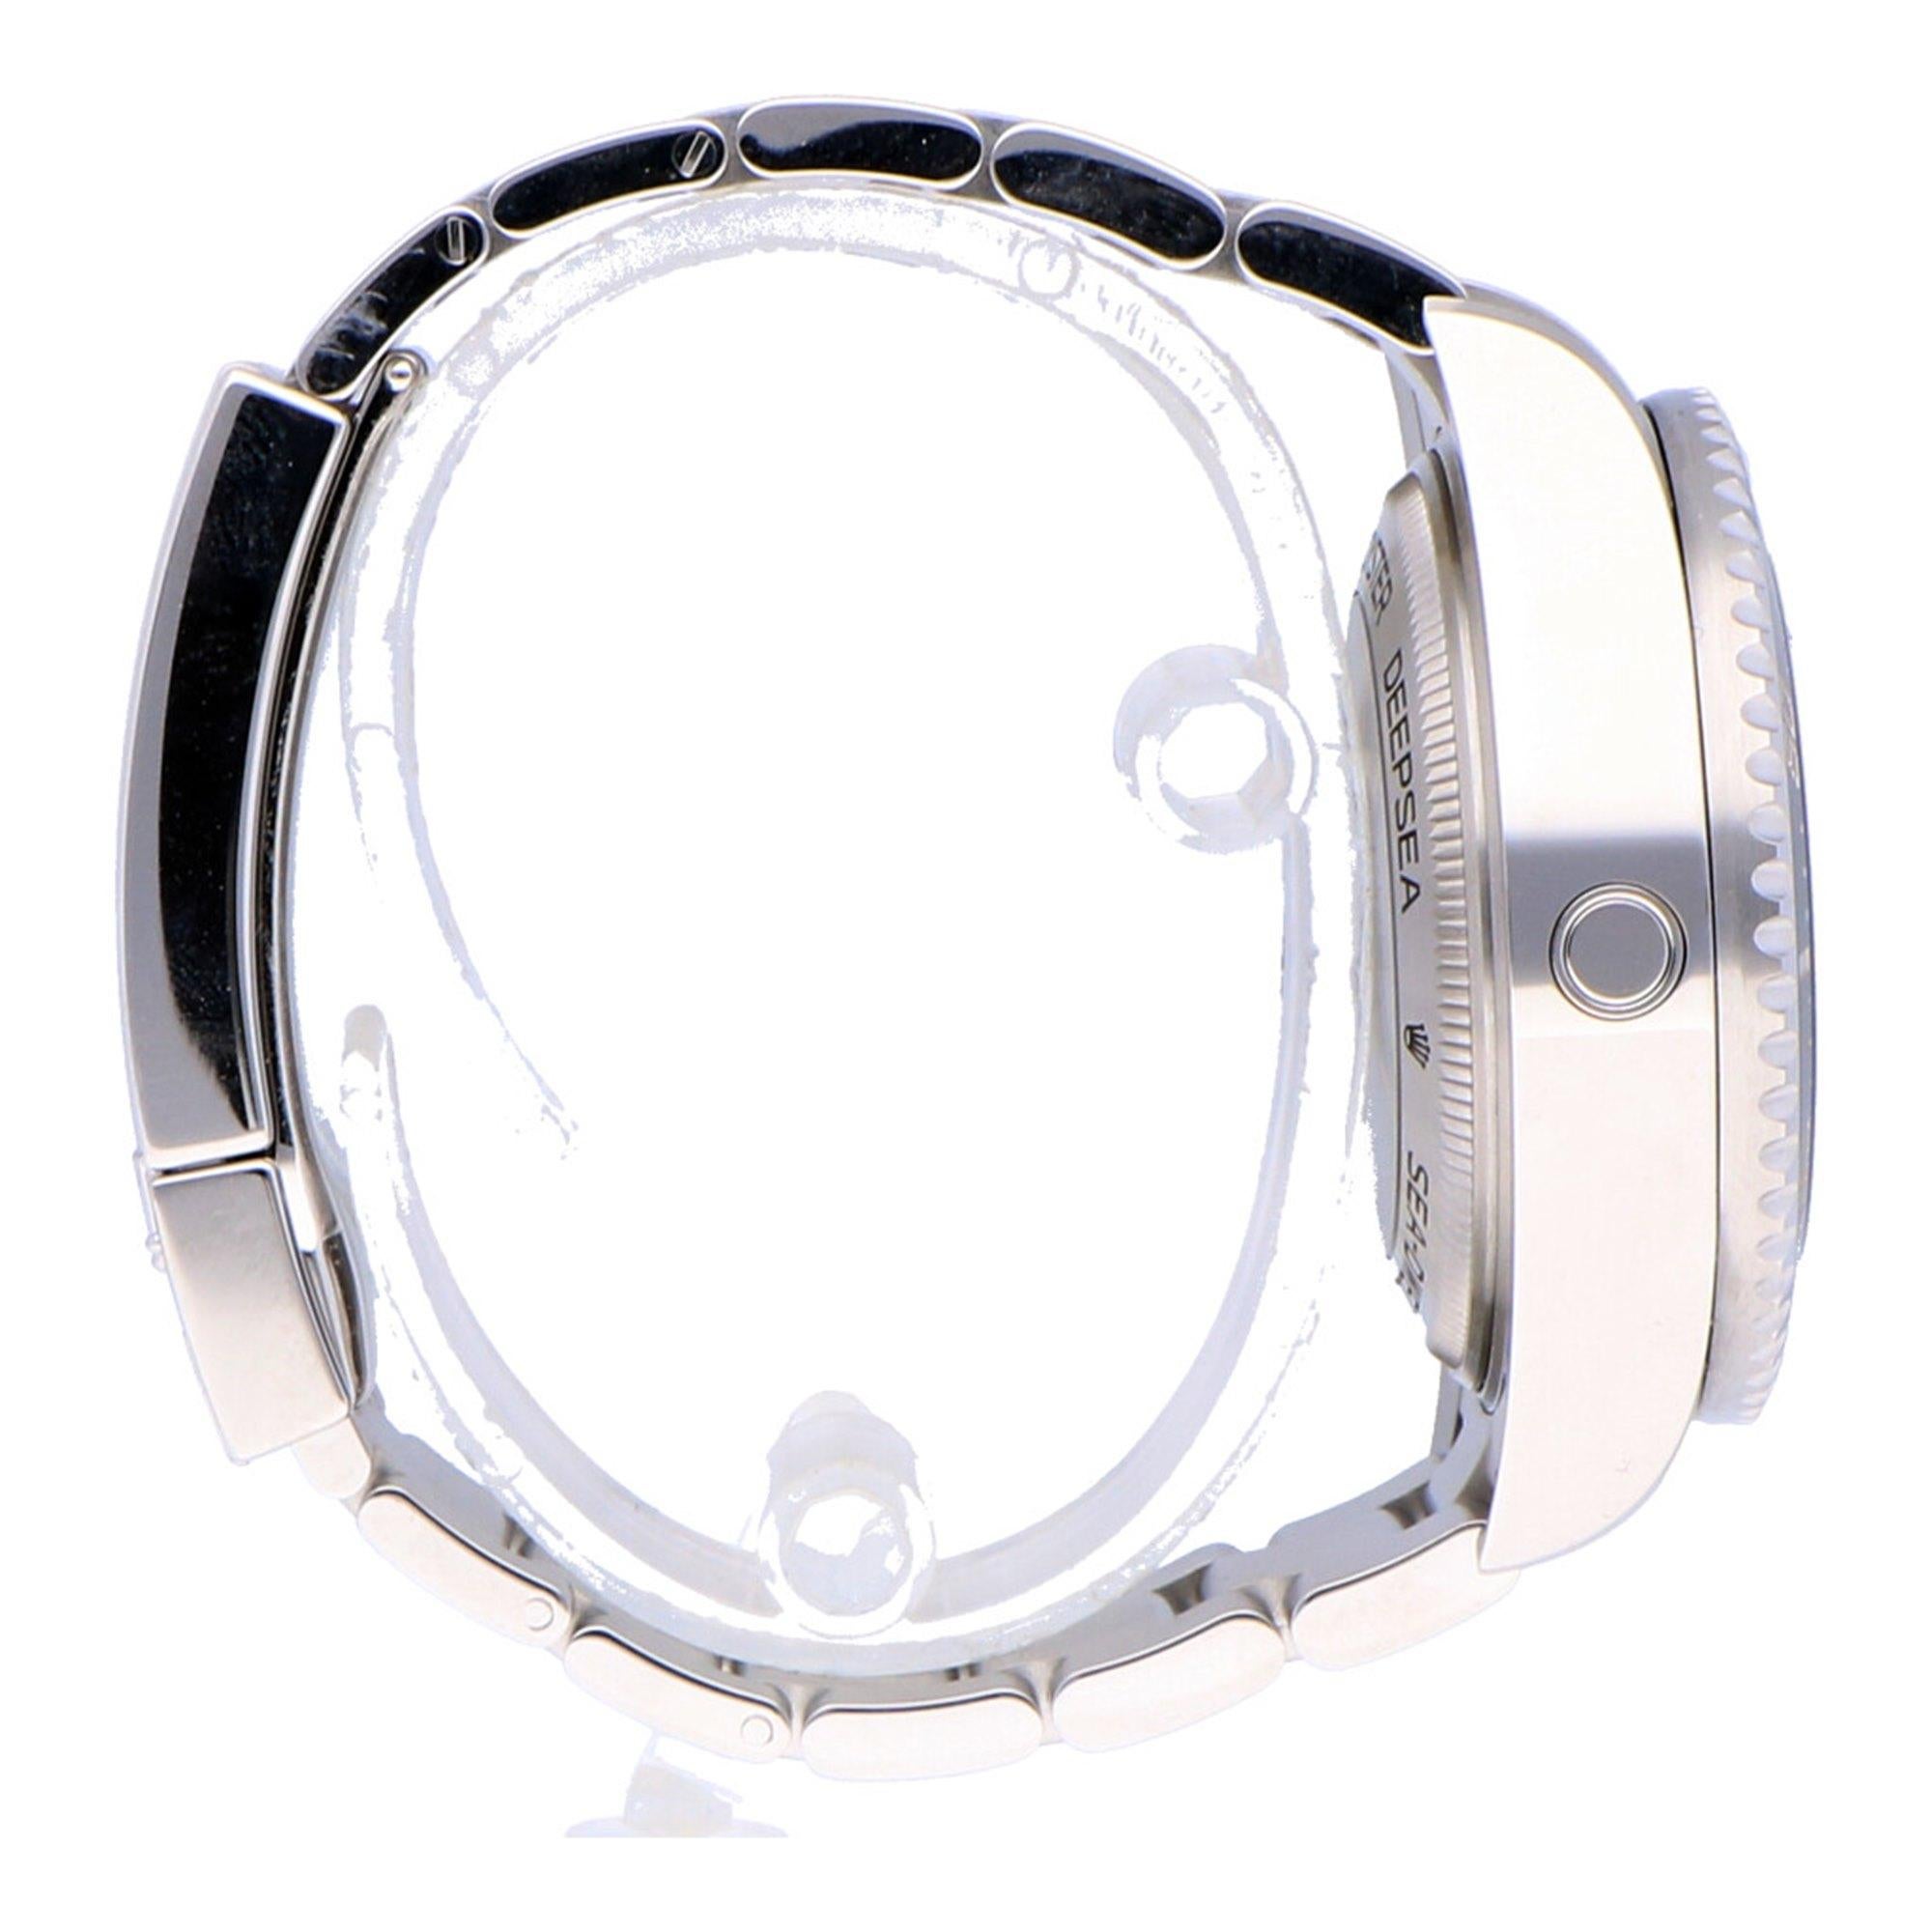 Pre-Owned Rolex Sea-Dweller Deepsea Stainless Steel 126660 Watch 3